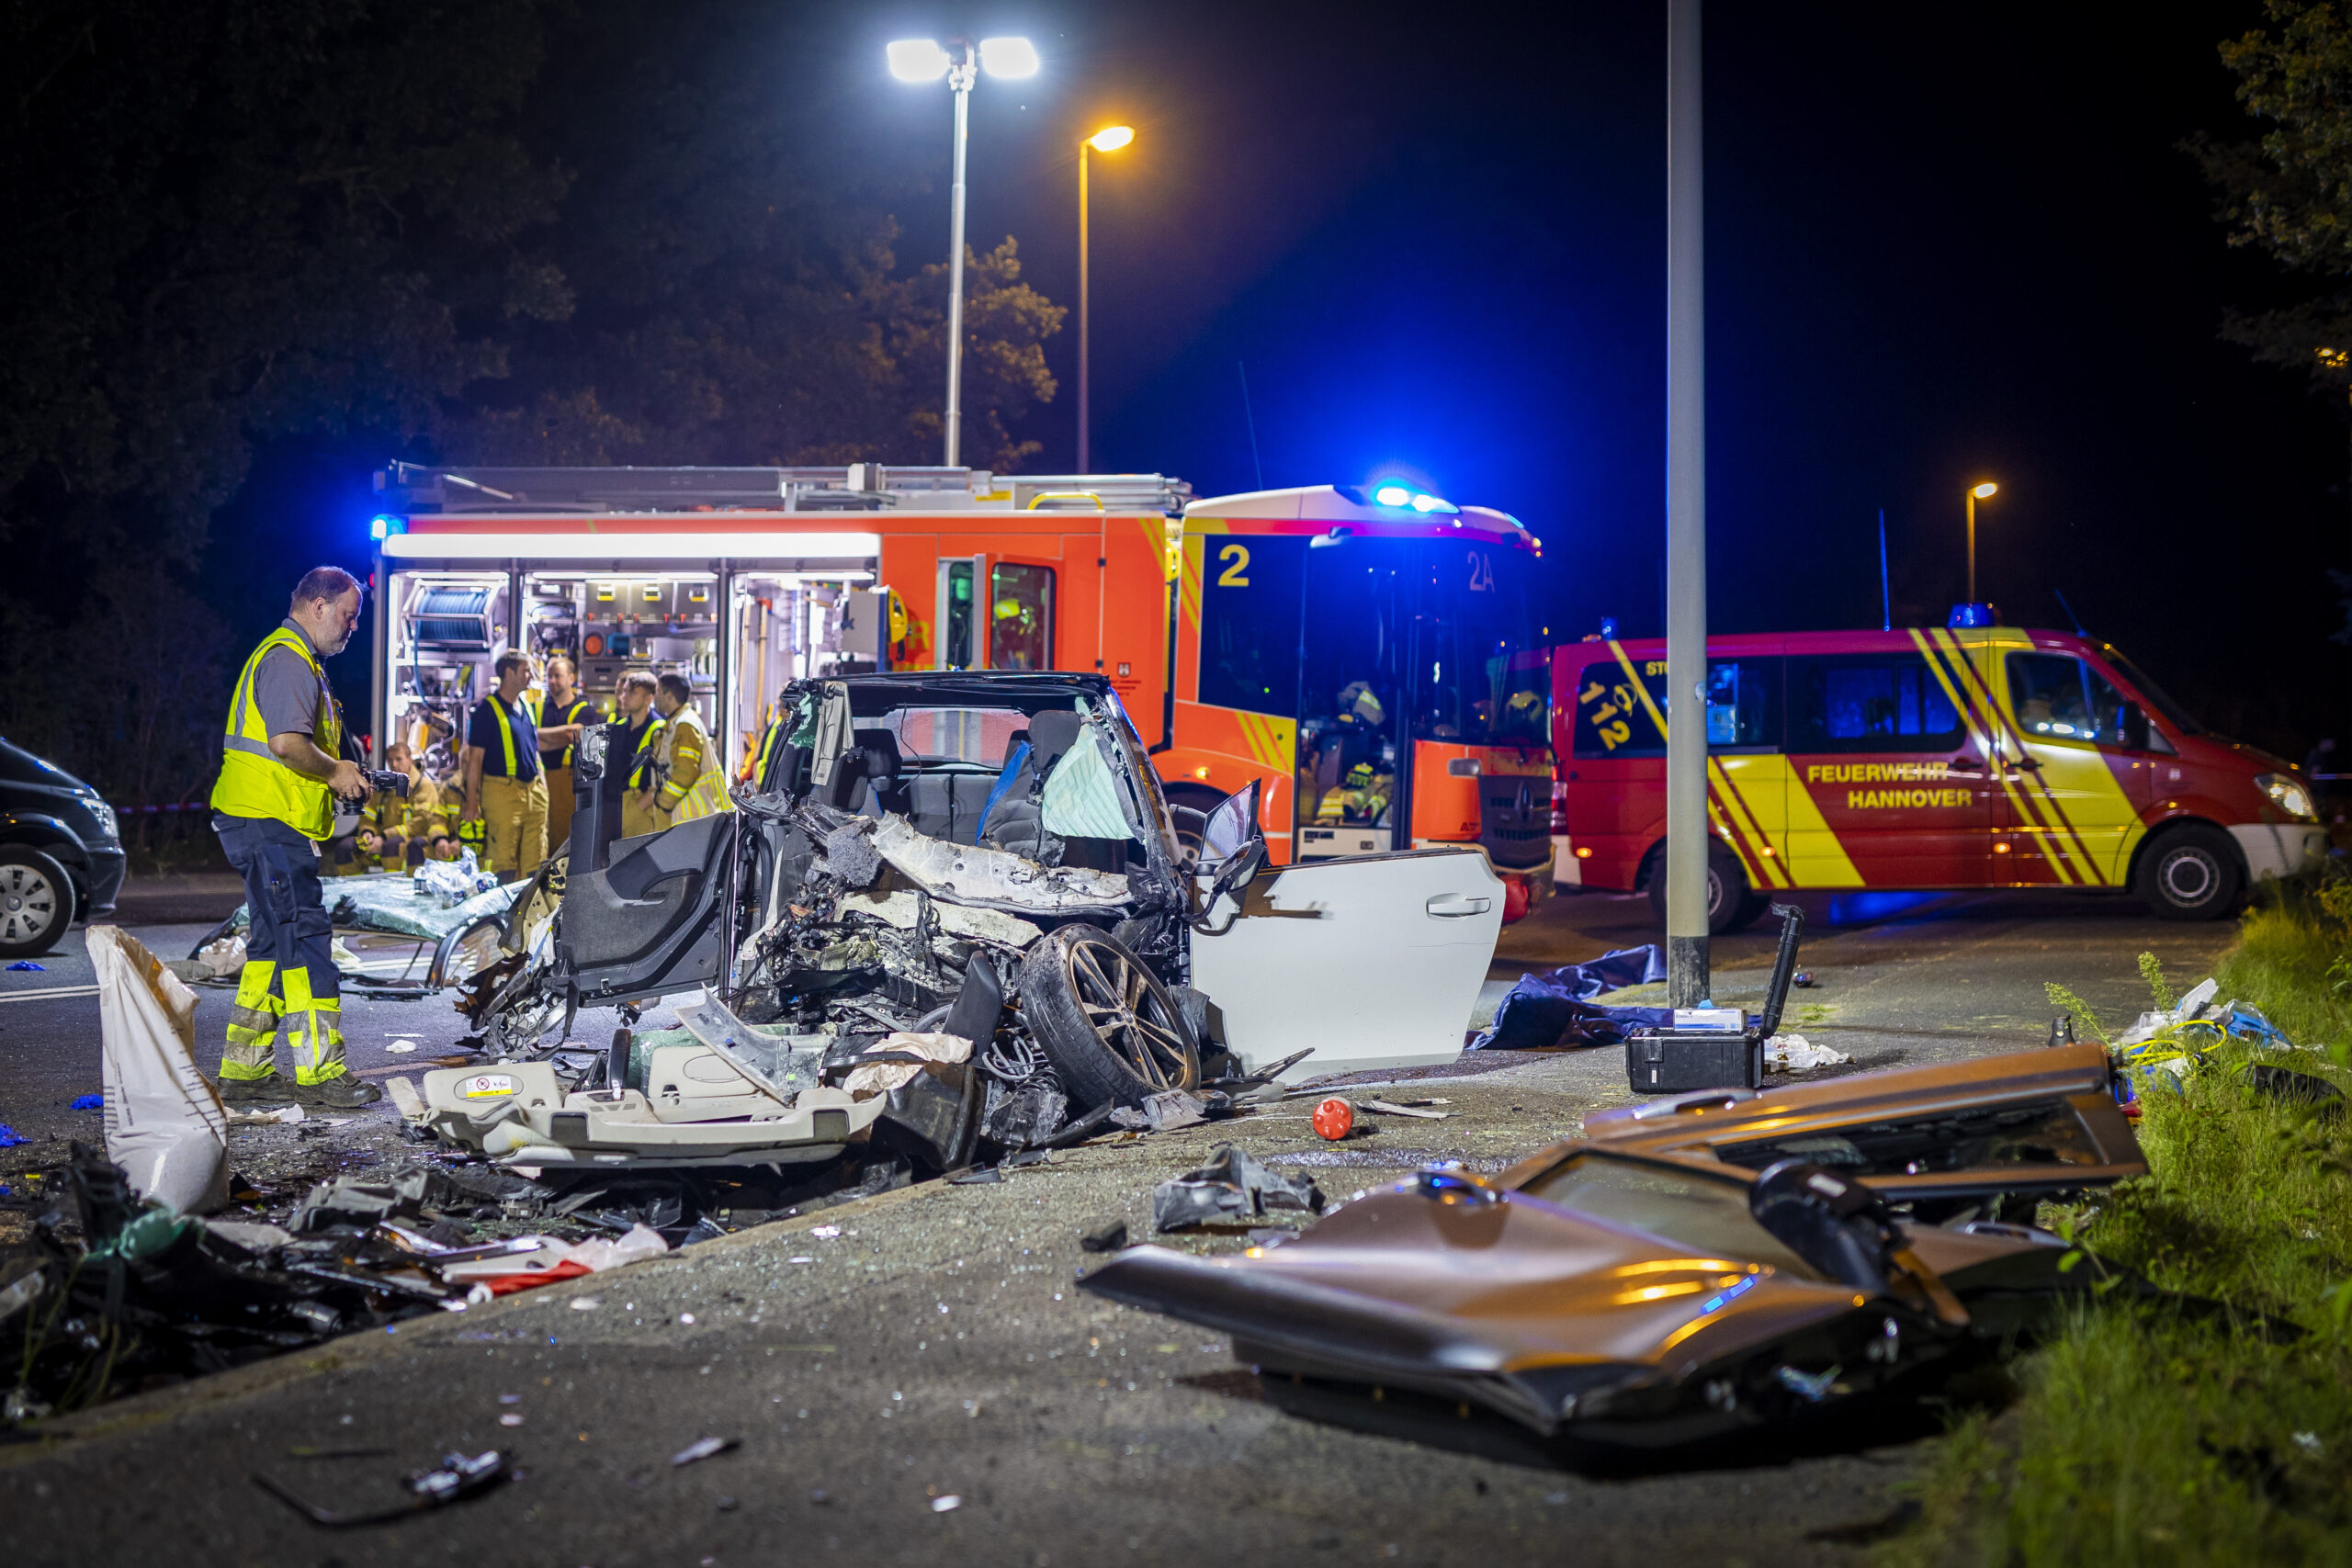 Bei dem frontalen Zusammenprall zweier Wagen in Hannover sind drei junge Menschen noch am Unfallort gestorben. Zwei weitere erlagen im Krankenhaus ihren Verletzungen.